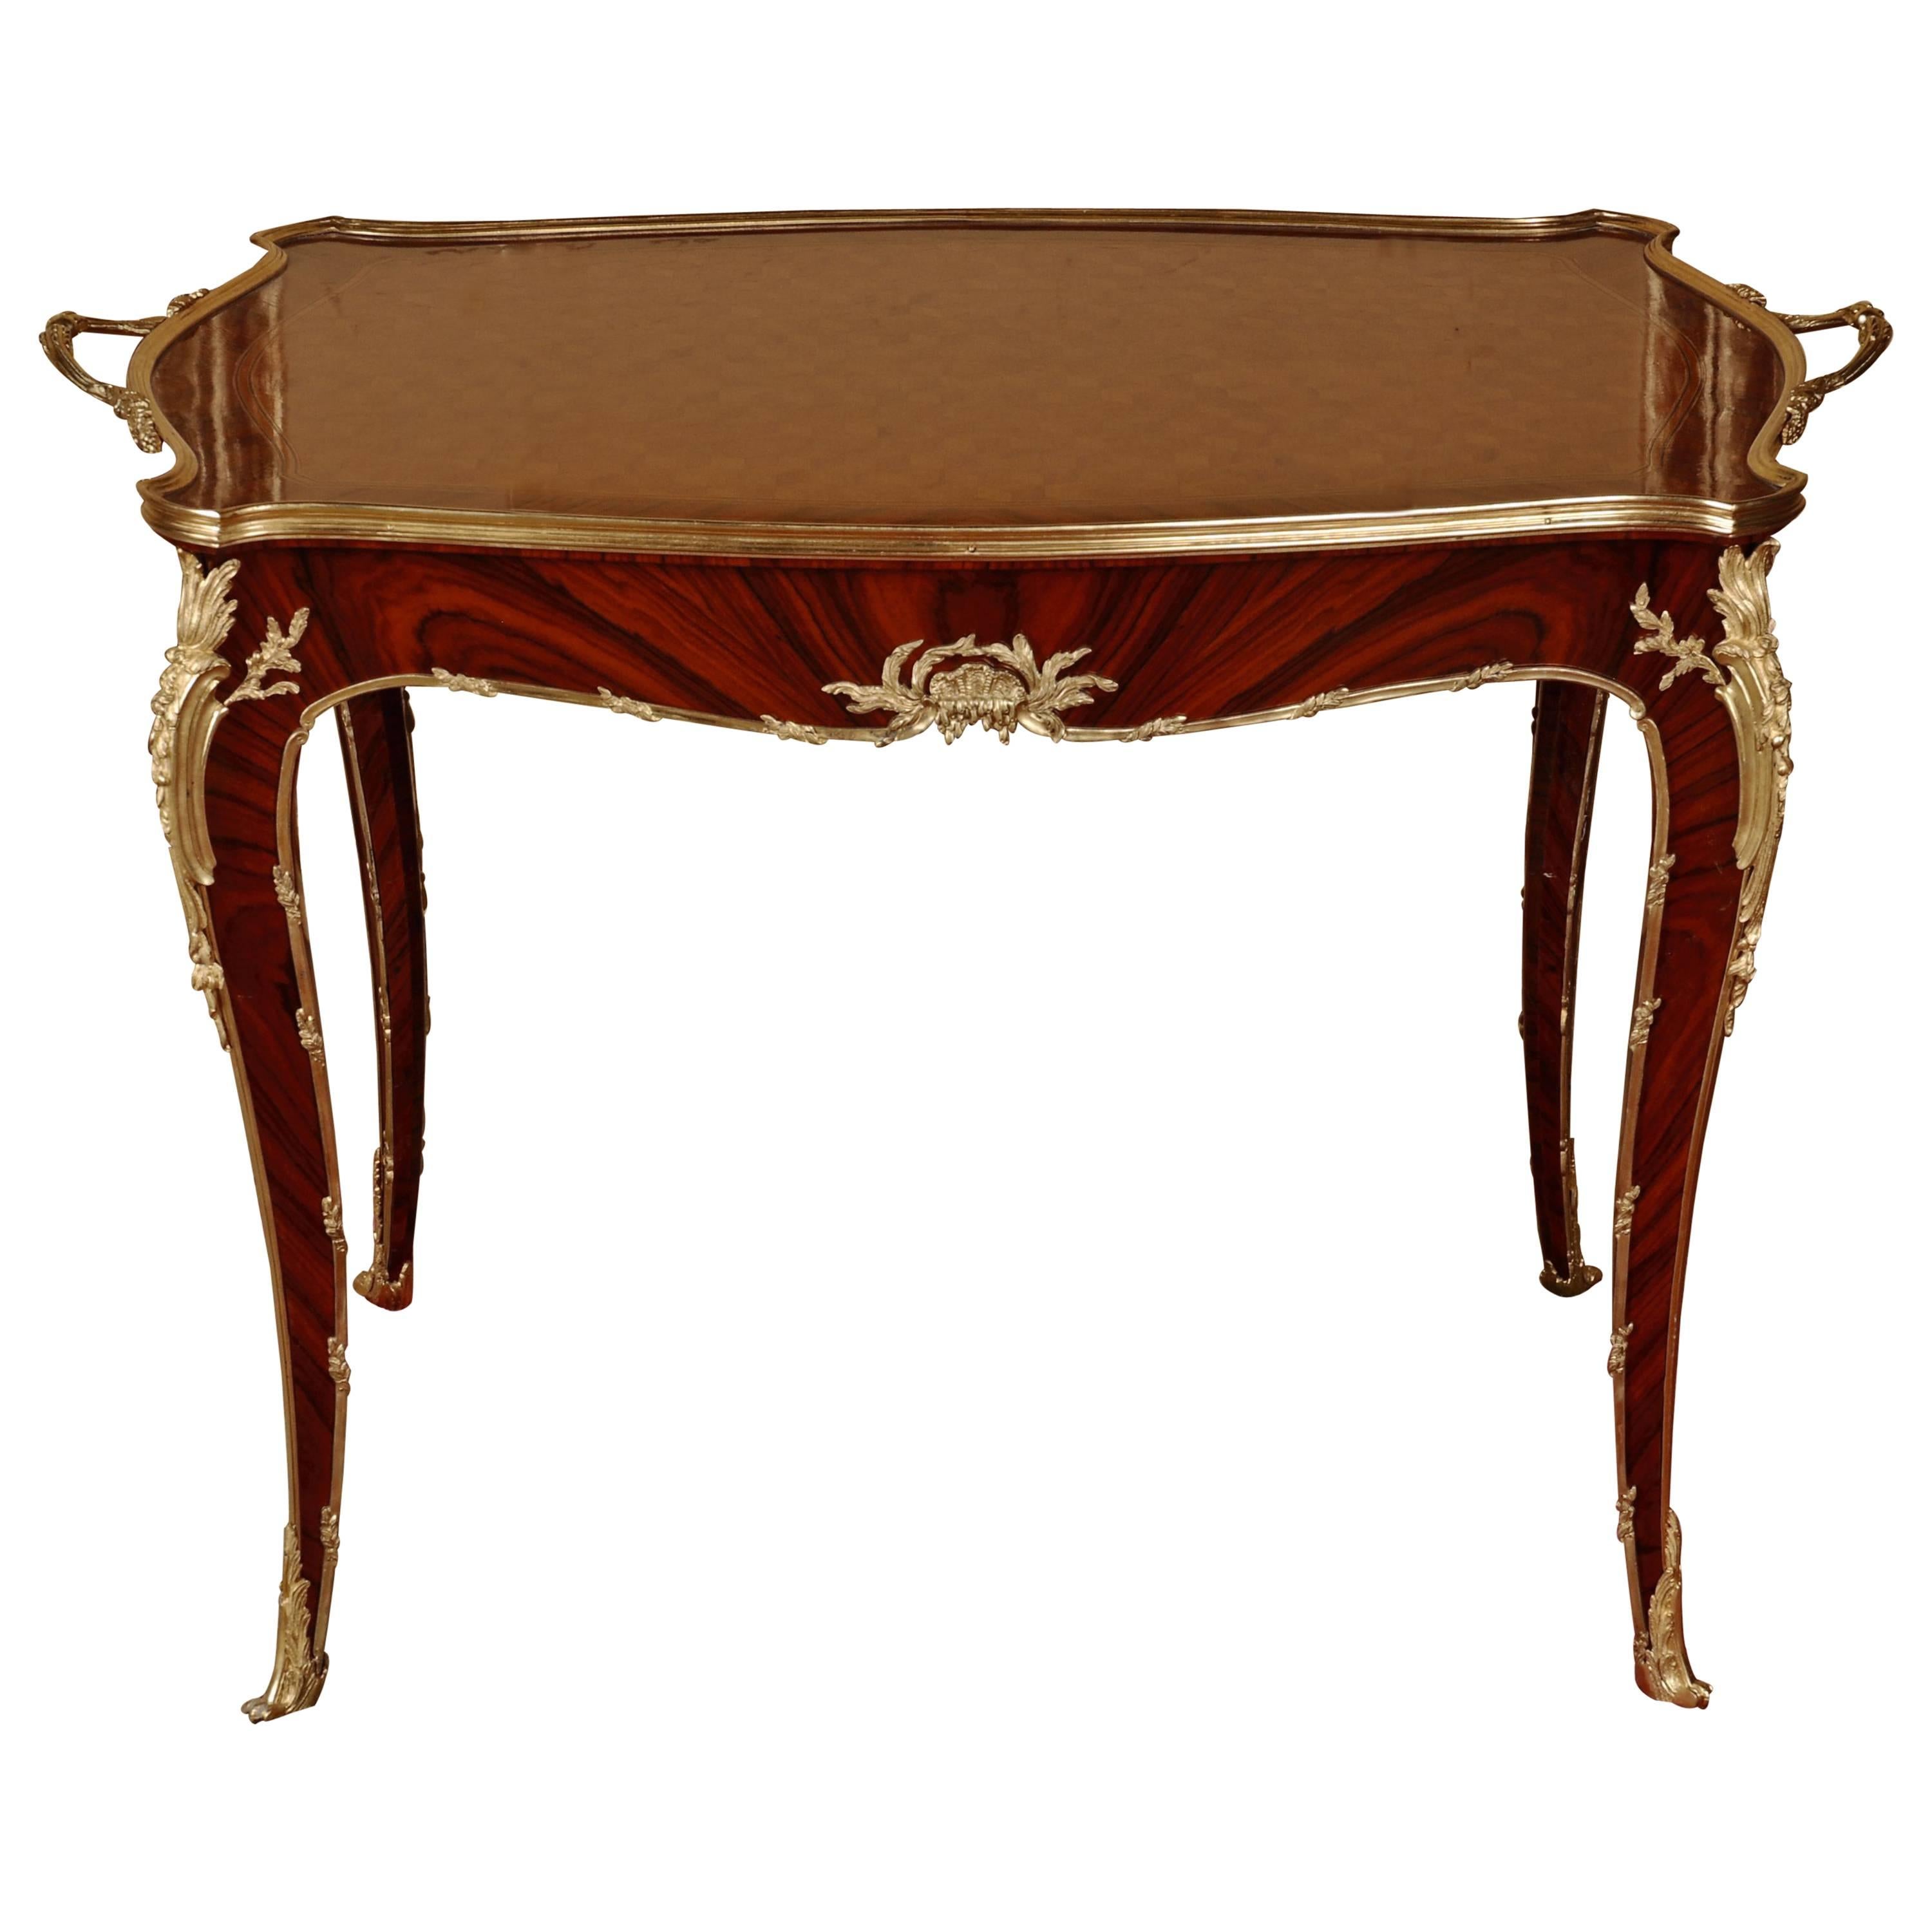 Table de service de style Louis XV du 20ème siècle d'après un dessin de Francois Linke